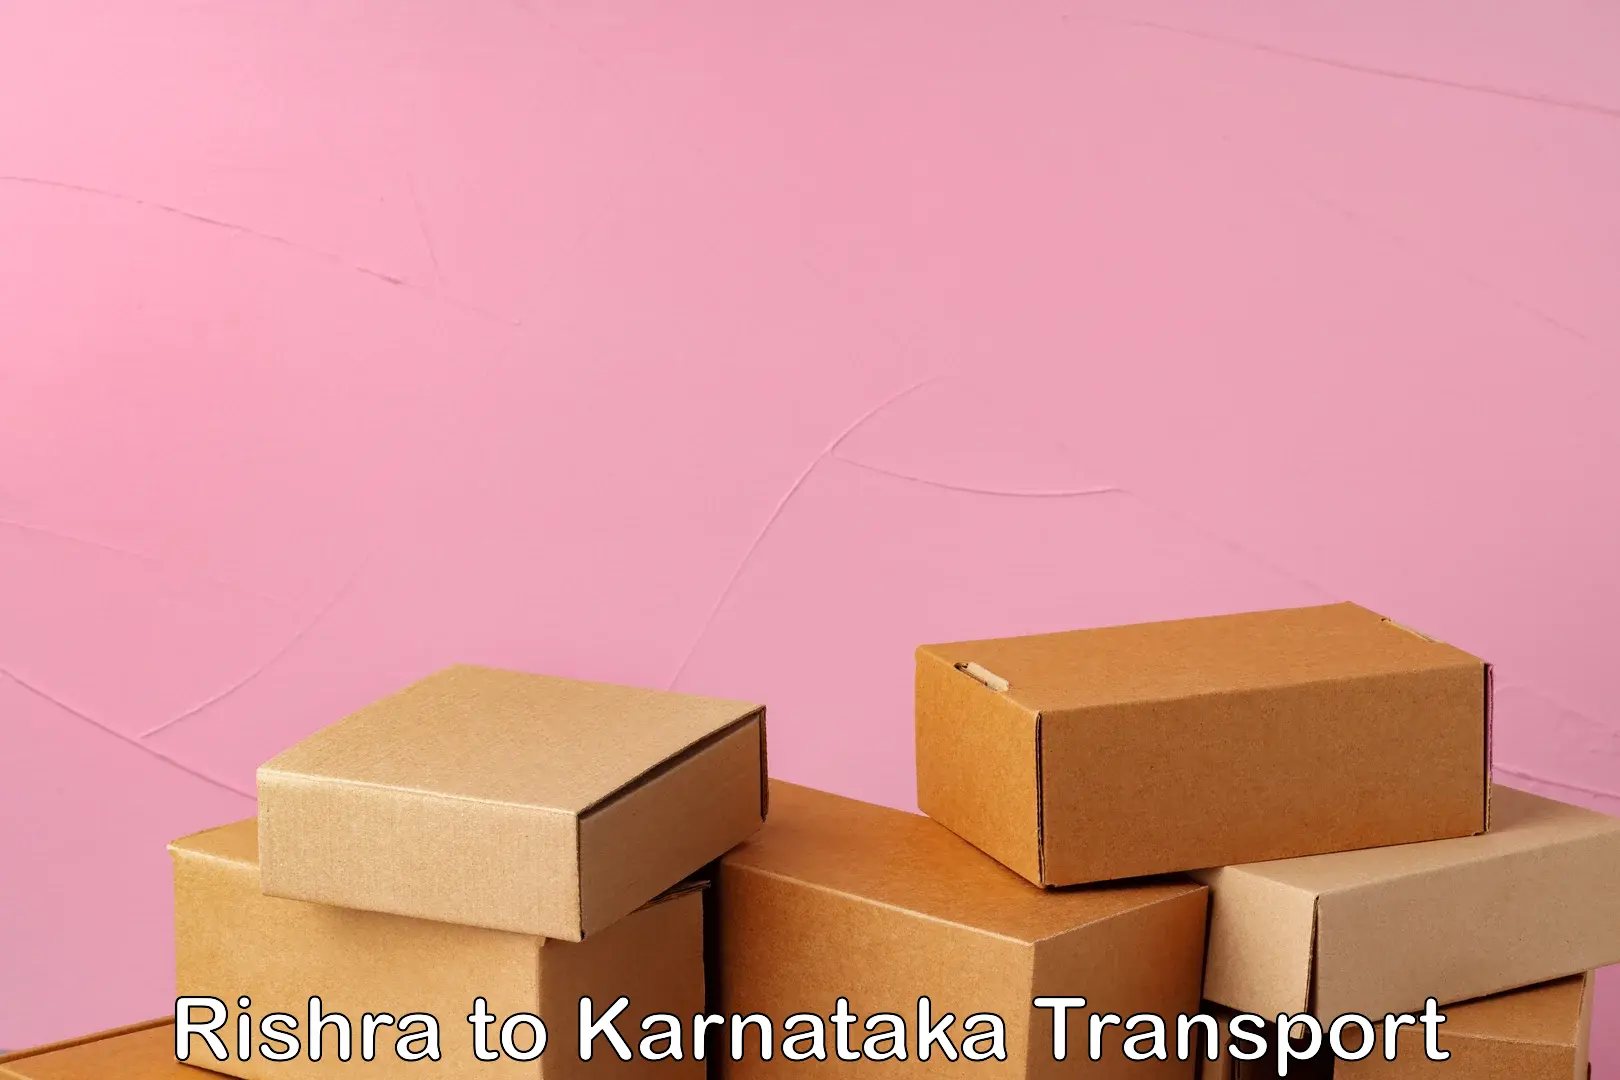 Sending bike to another city Rishra to Karnataka